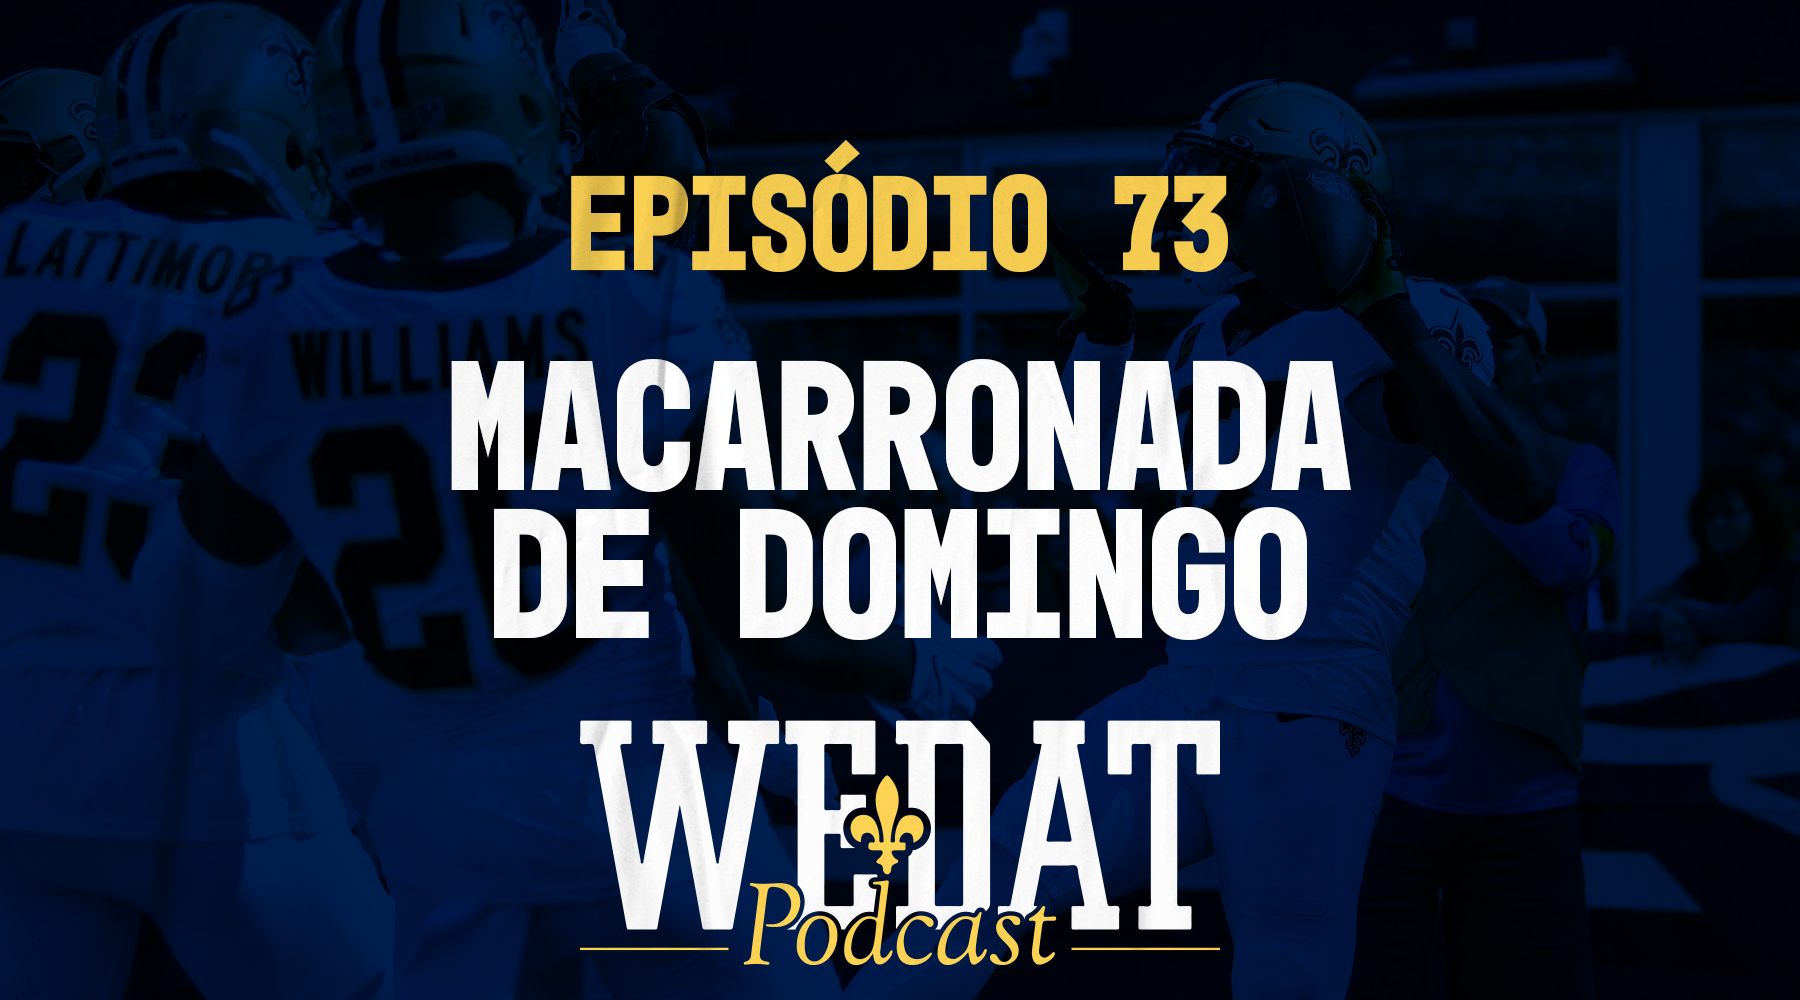 WE DAT PODCAST #73 – Macarronada de Domingo